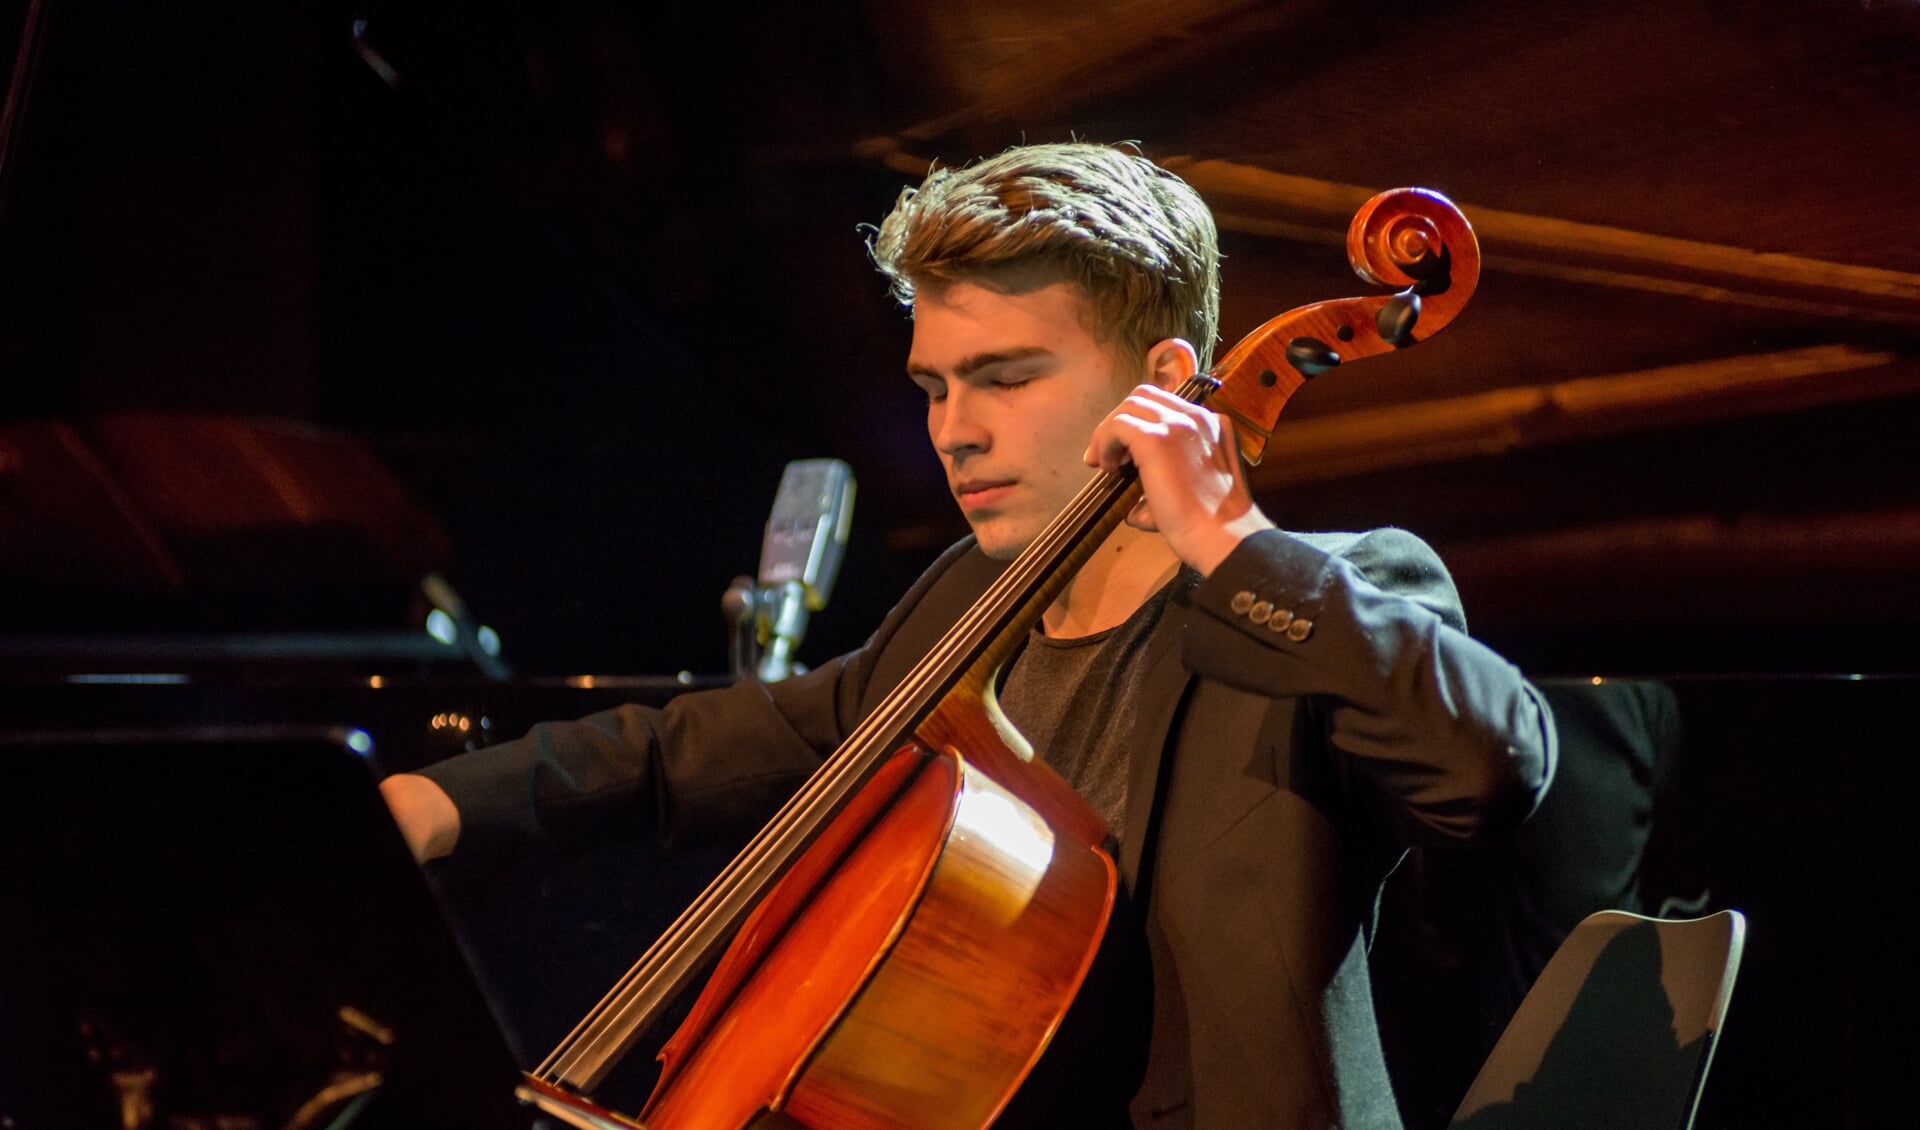 Solist op cello is het Noorse talent Mathias Schwaiger Pearson, hier in Vennesla Kulturhus. Foto: Ingvald R. Ingebretsen